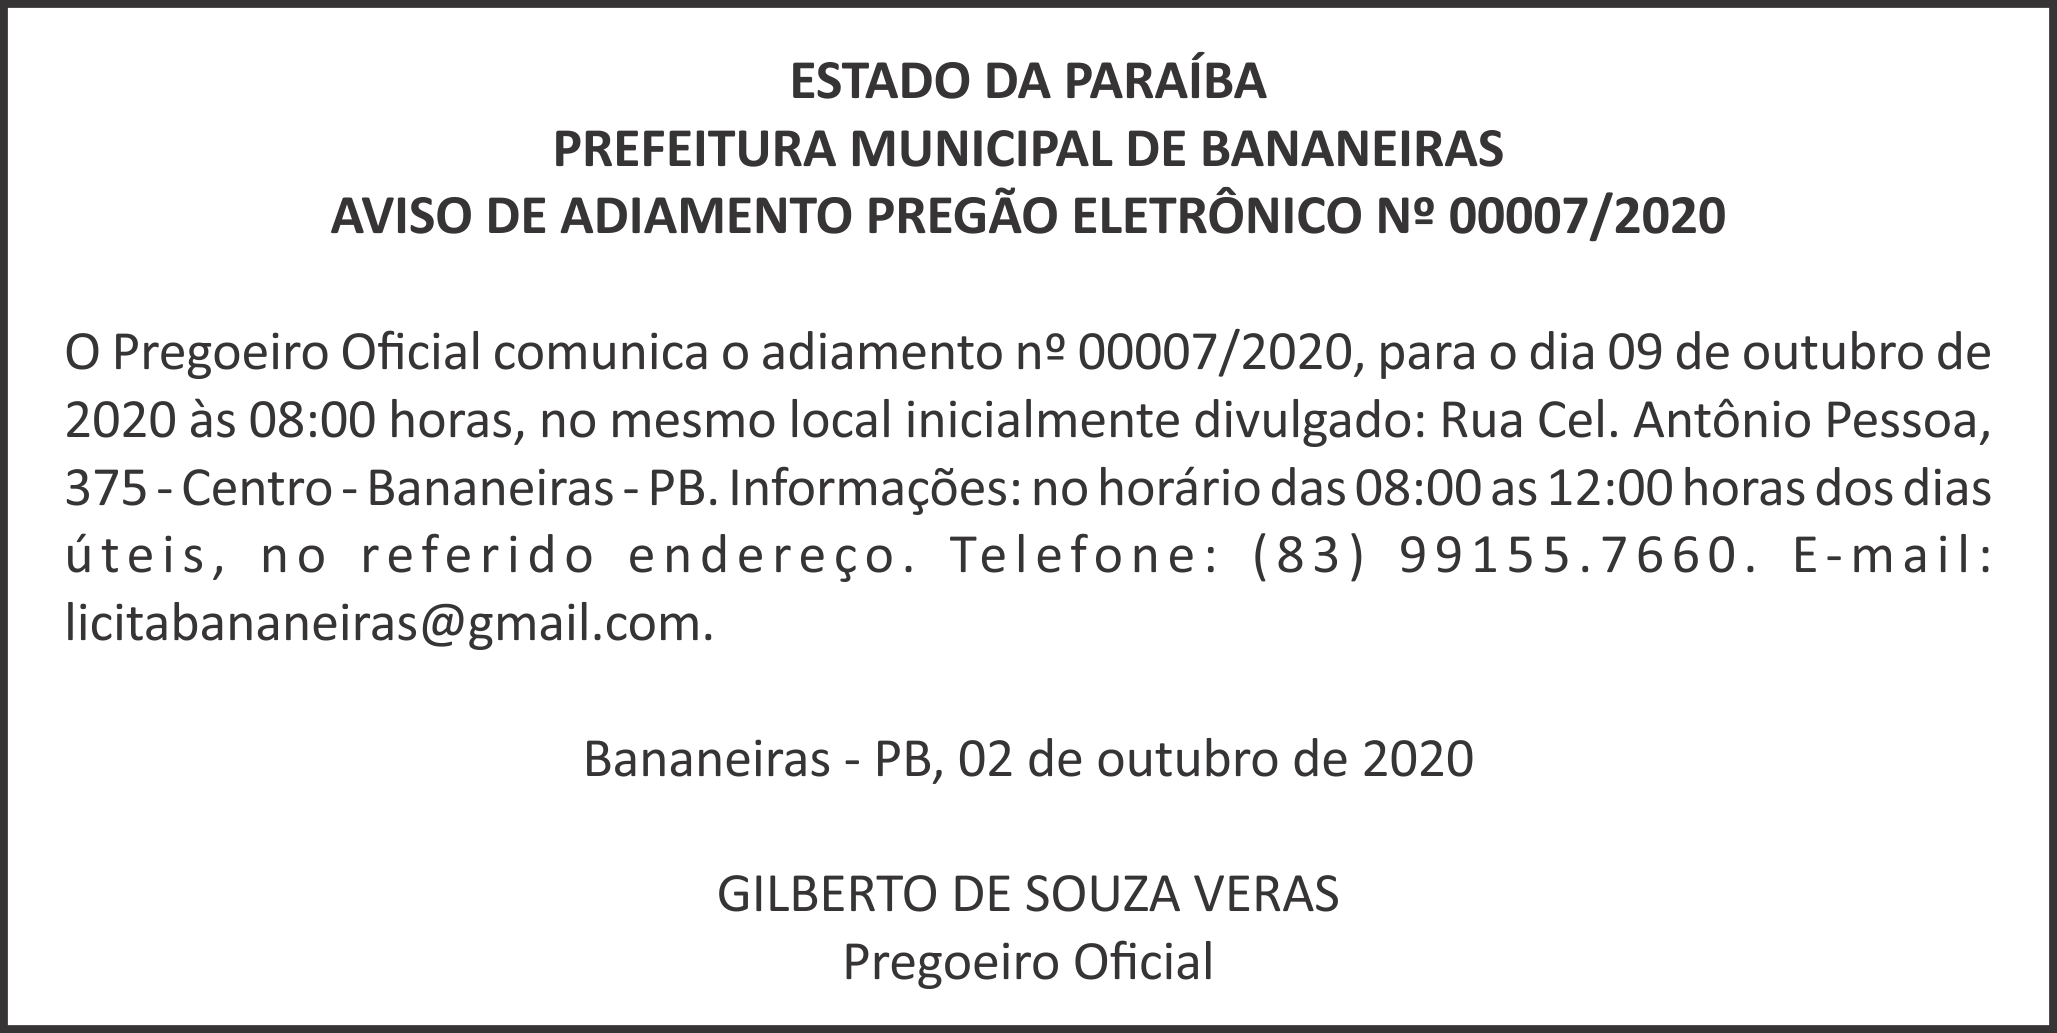 PREFEITURA MUNICIPAL DE BANANEIRAS – AVISO DE ADIAMENTO – PREGÃO ELETRÔNICO Nº 00007/2020